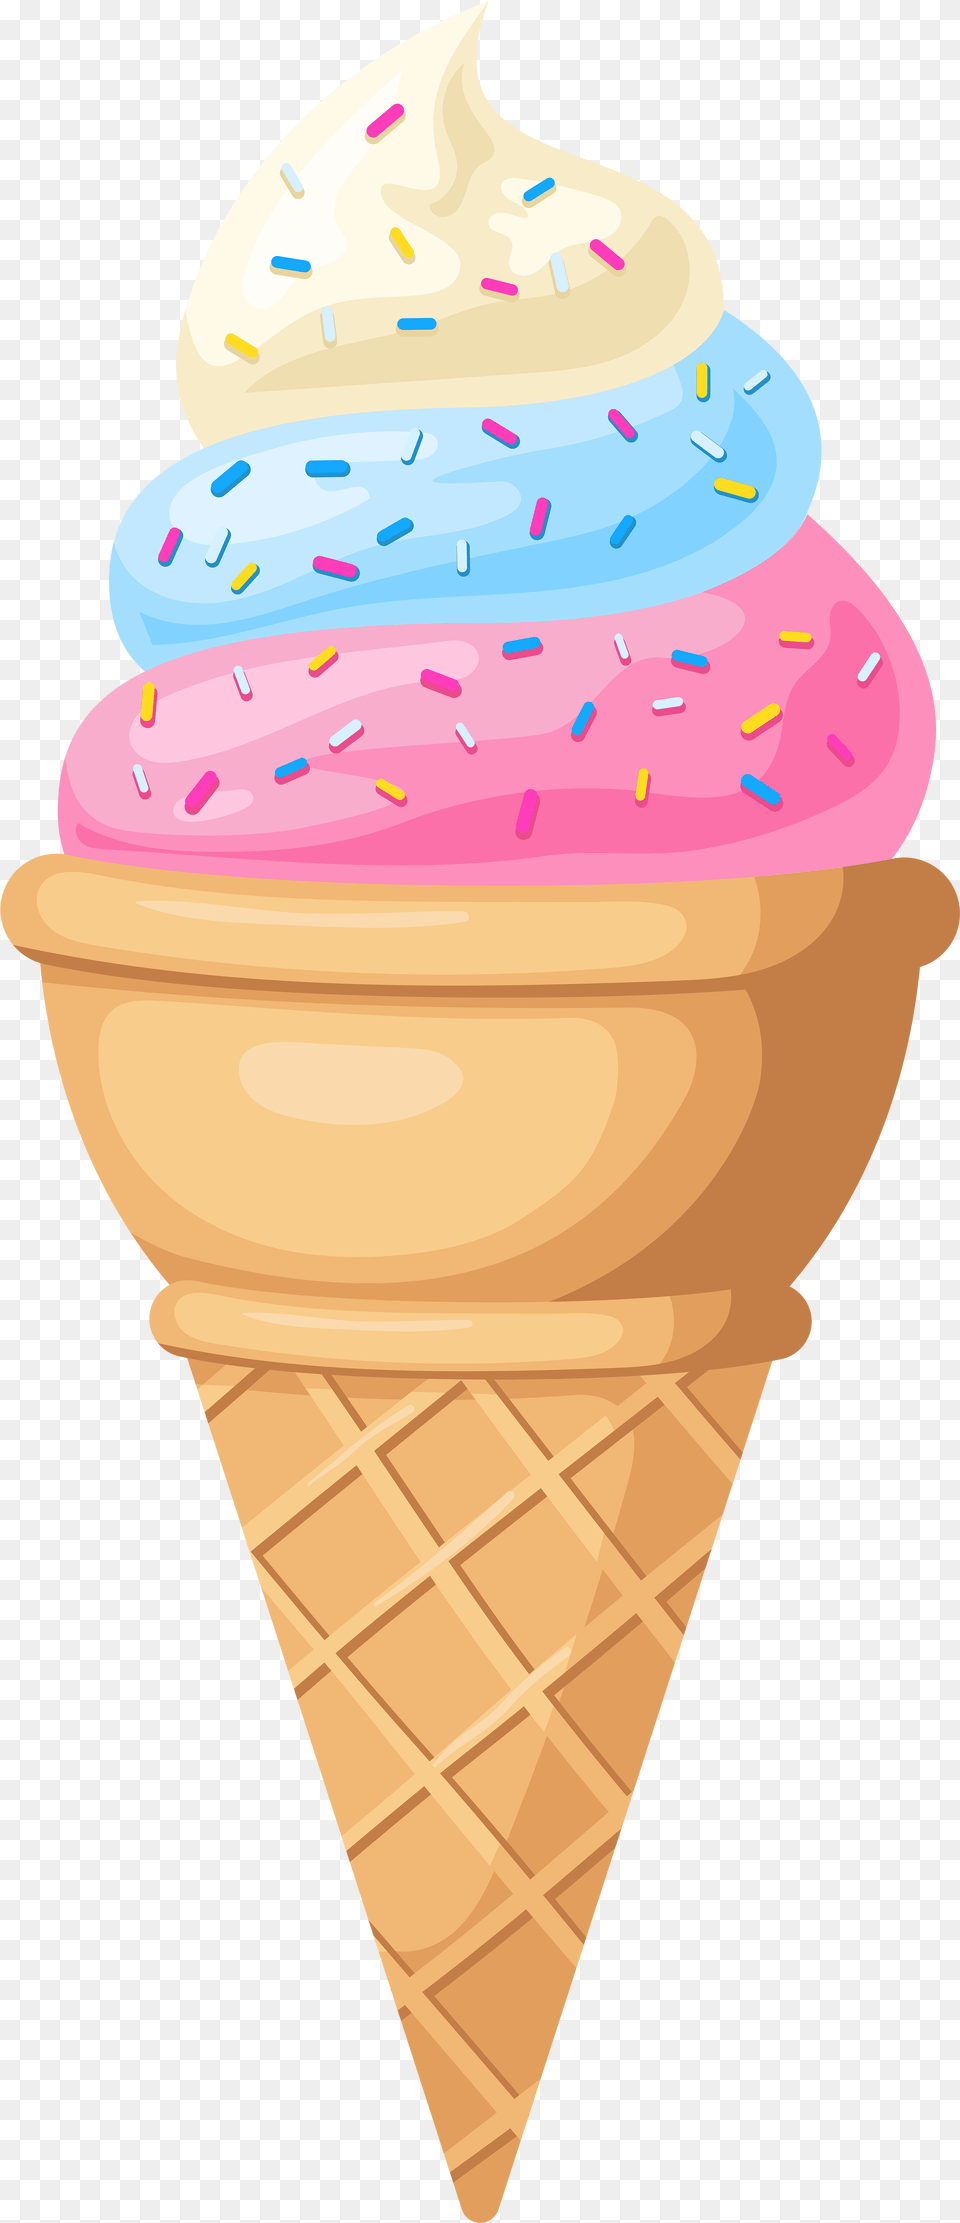 Ice Cream Cone Clip Art Clip Art Ice Cream, Dessert, Food, Ice Cream, Soft Serve Ice Cream Free Transparent Png